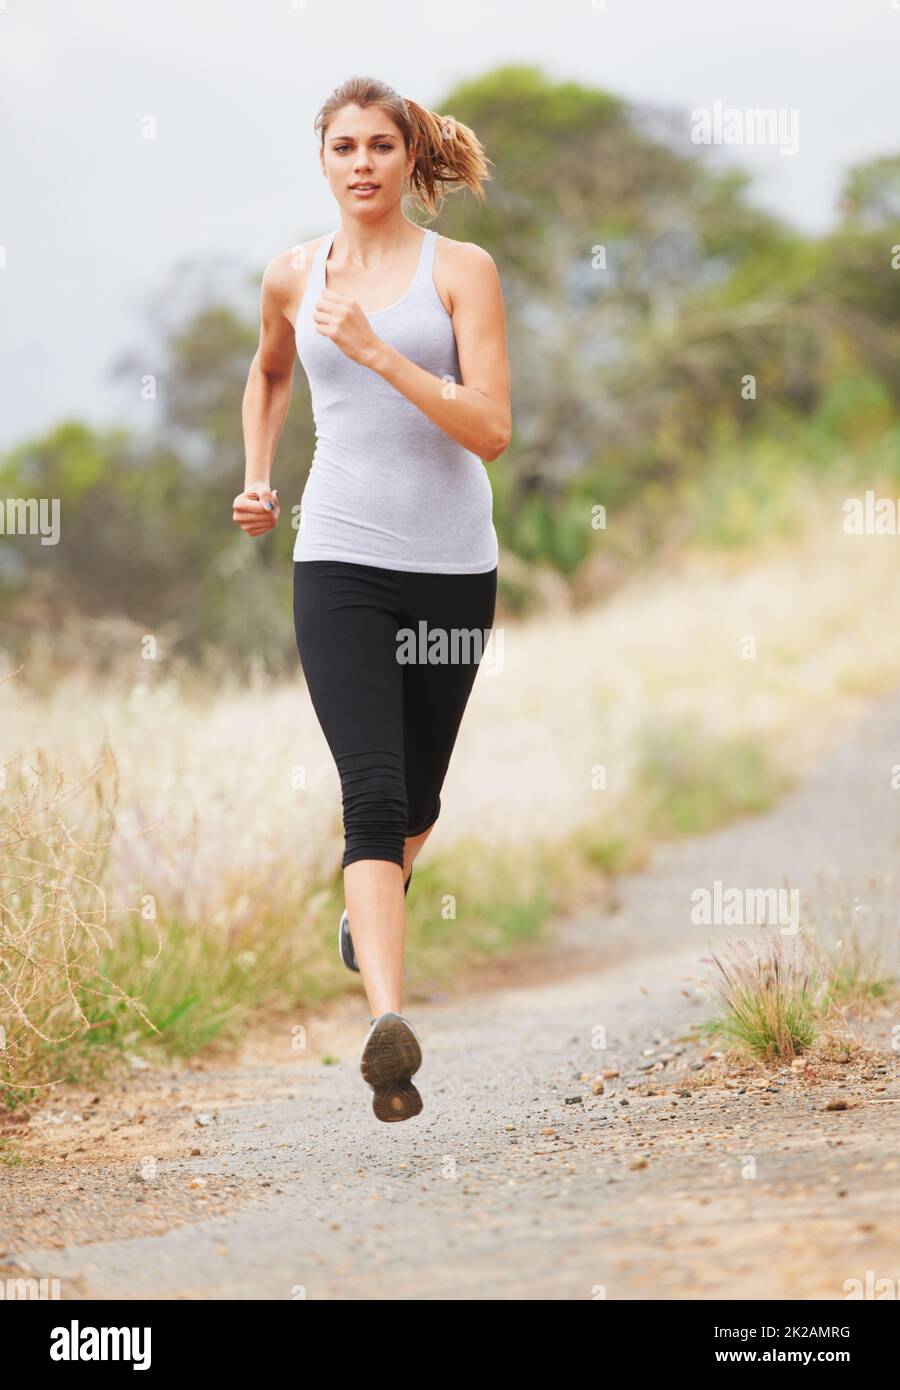 Laufen für Fitness. Eine junge Frau, die auf einer unbefestigten Straße läuft. Stockfoto